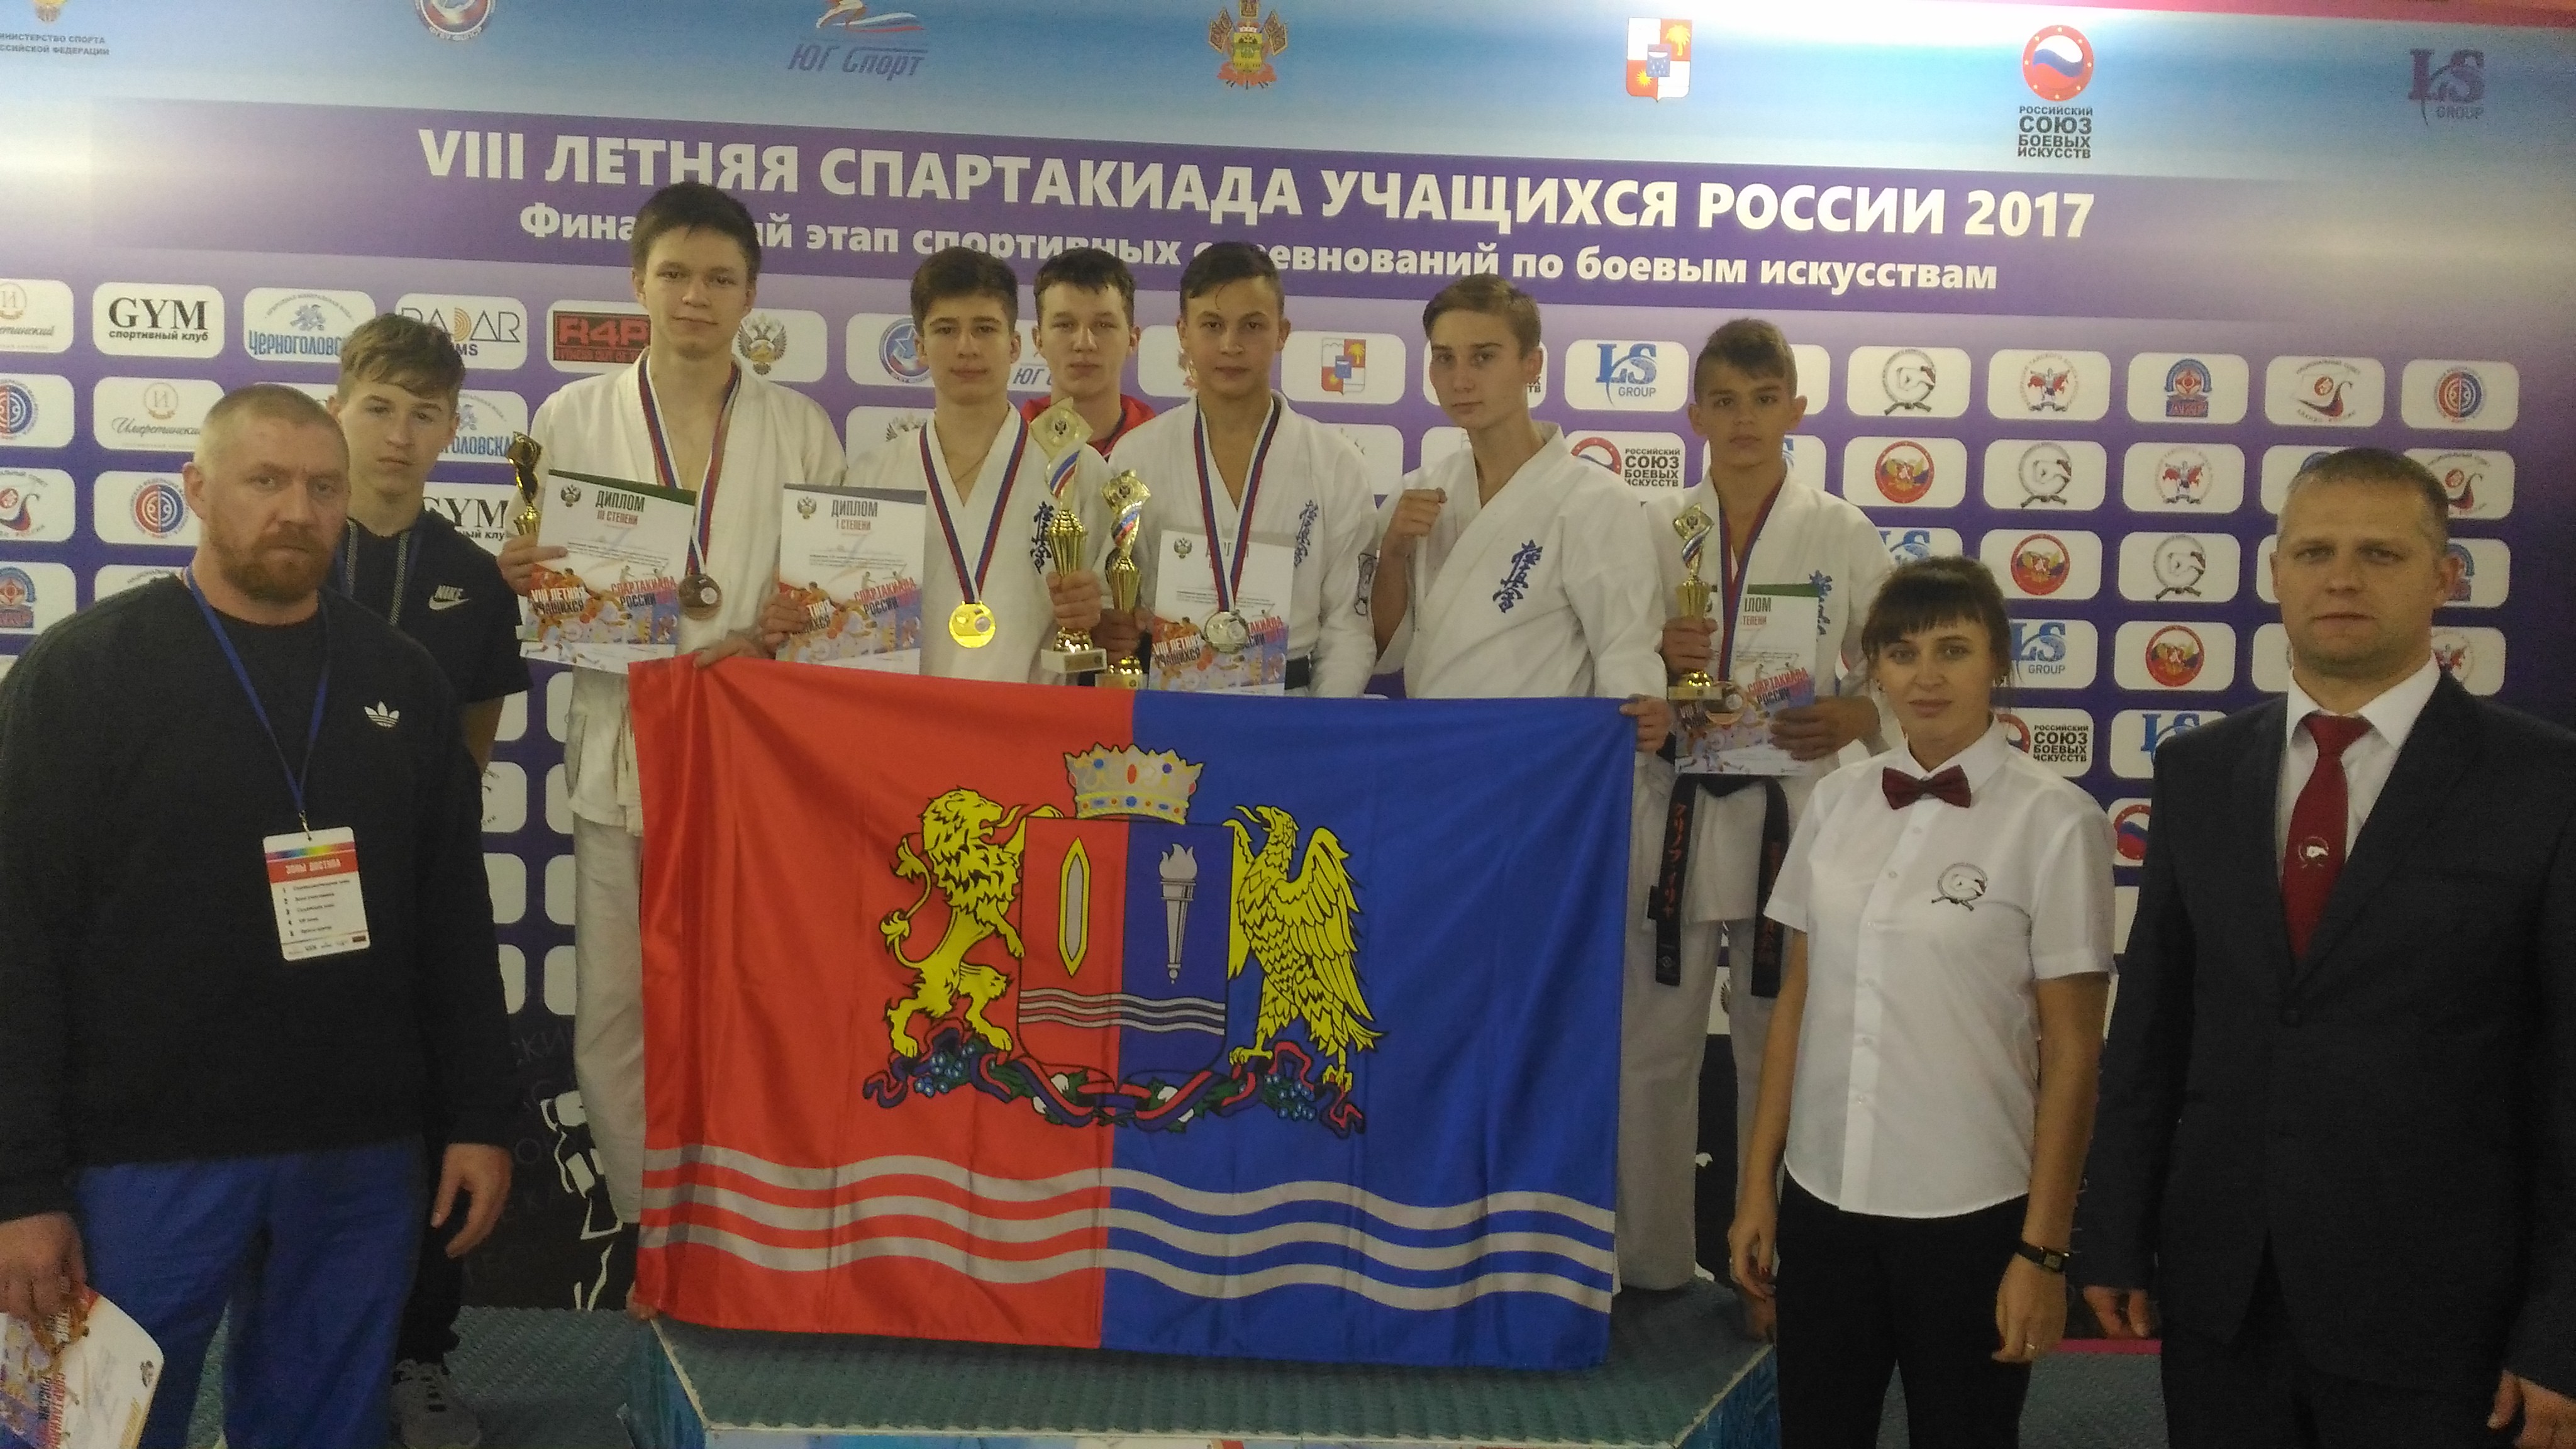 Ивановские спортсмены вернулись с медалями с соревнований по боевым искусствам 